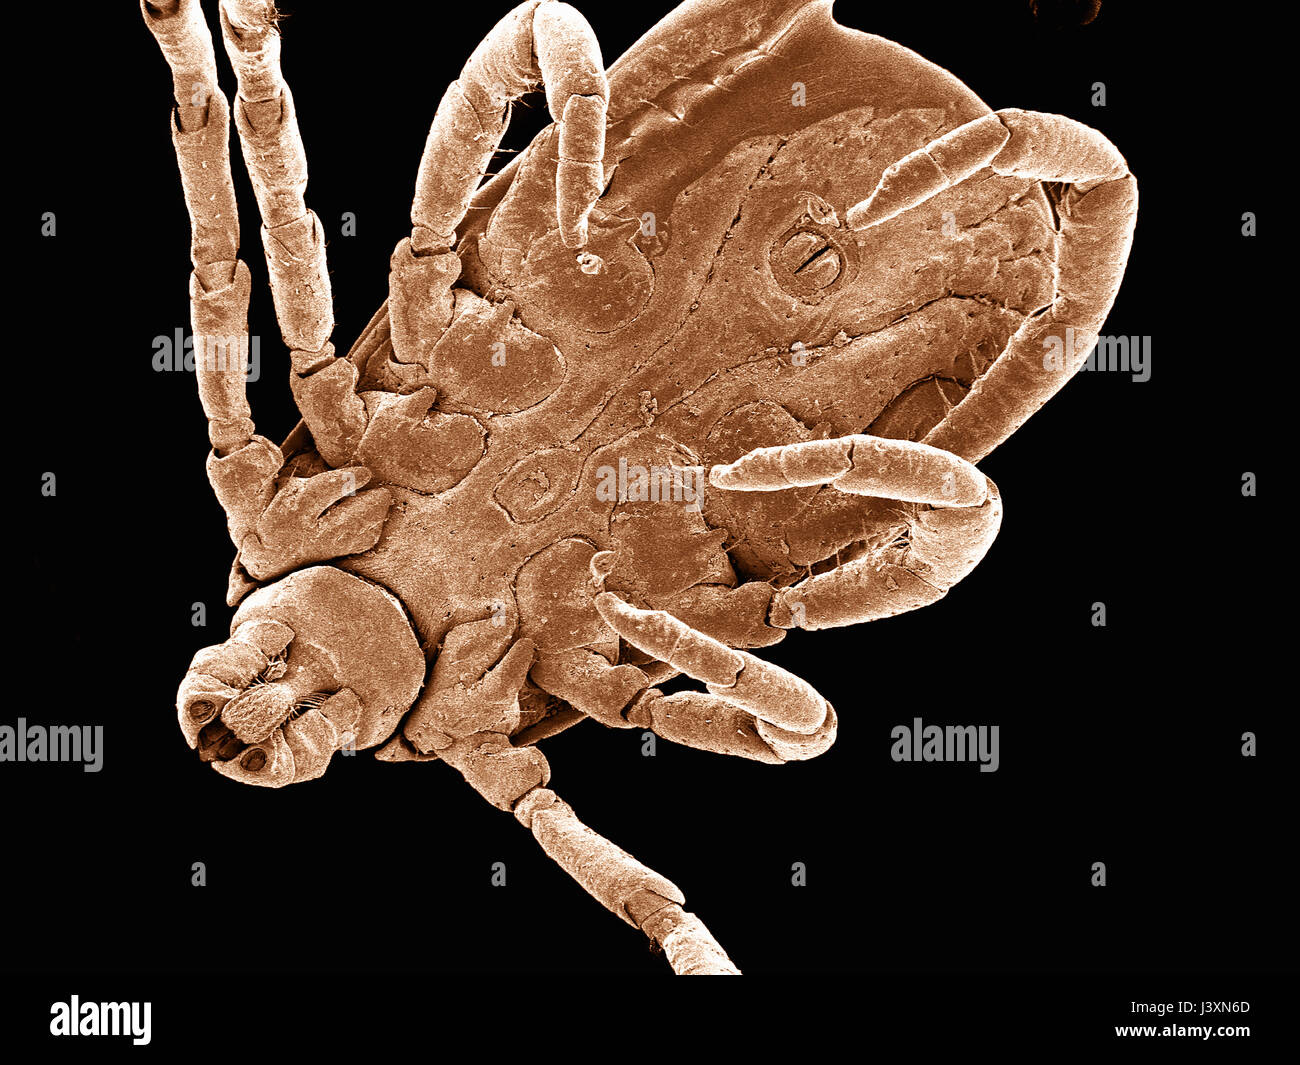 La superficie ventral de la garrapata del perro (Acari: Dermacentor sp.)  fotografiada en un microscopio electrónico de barrido Fotografía de stock -  Alamy